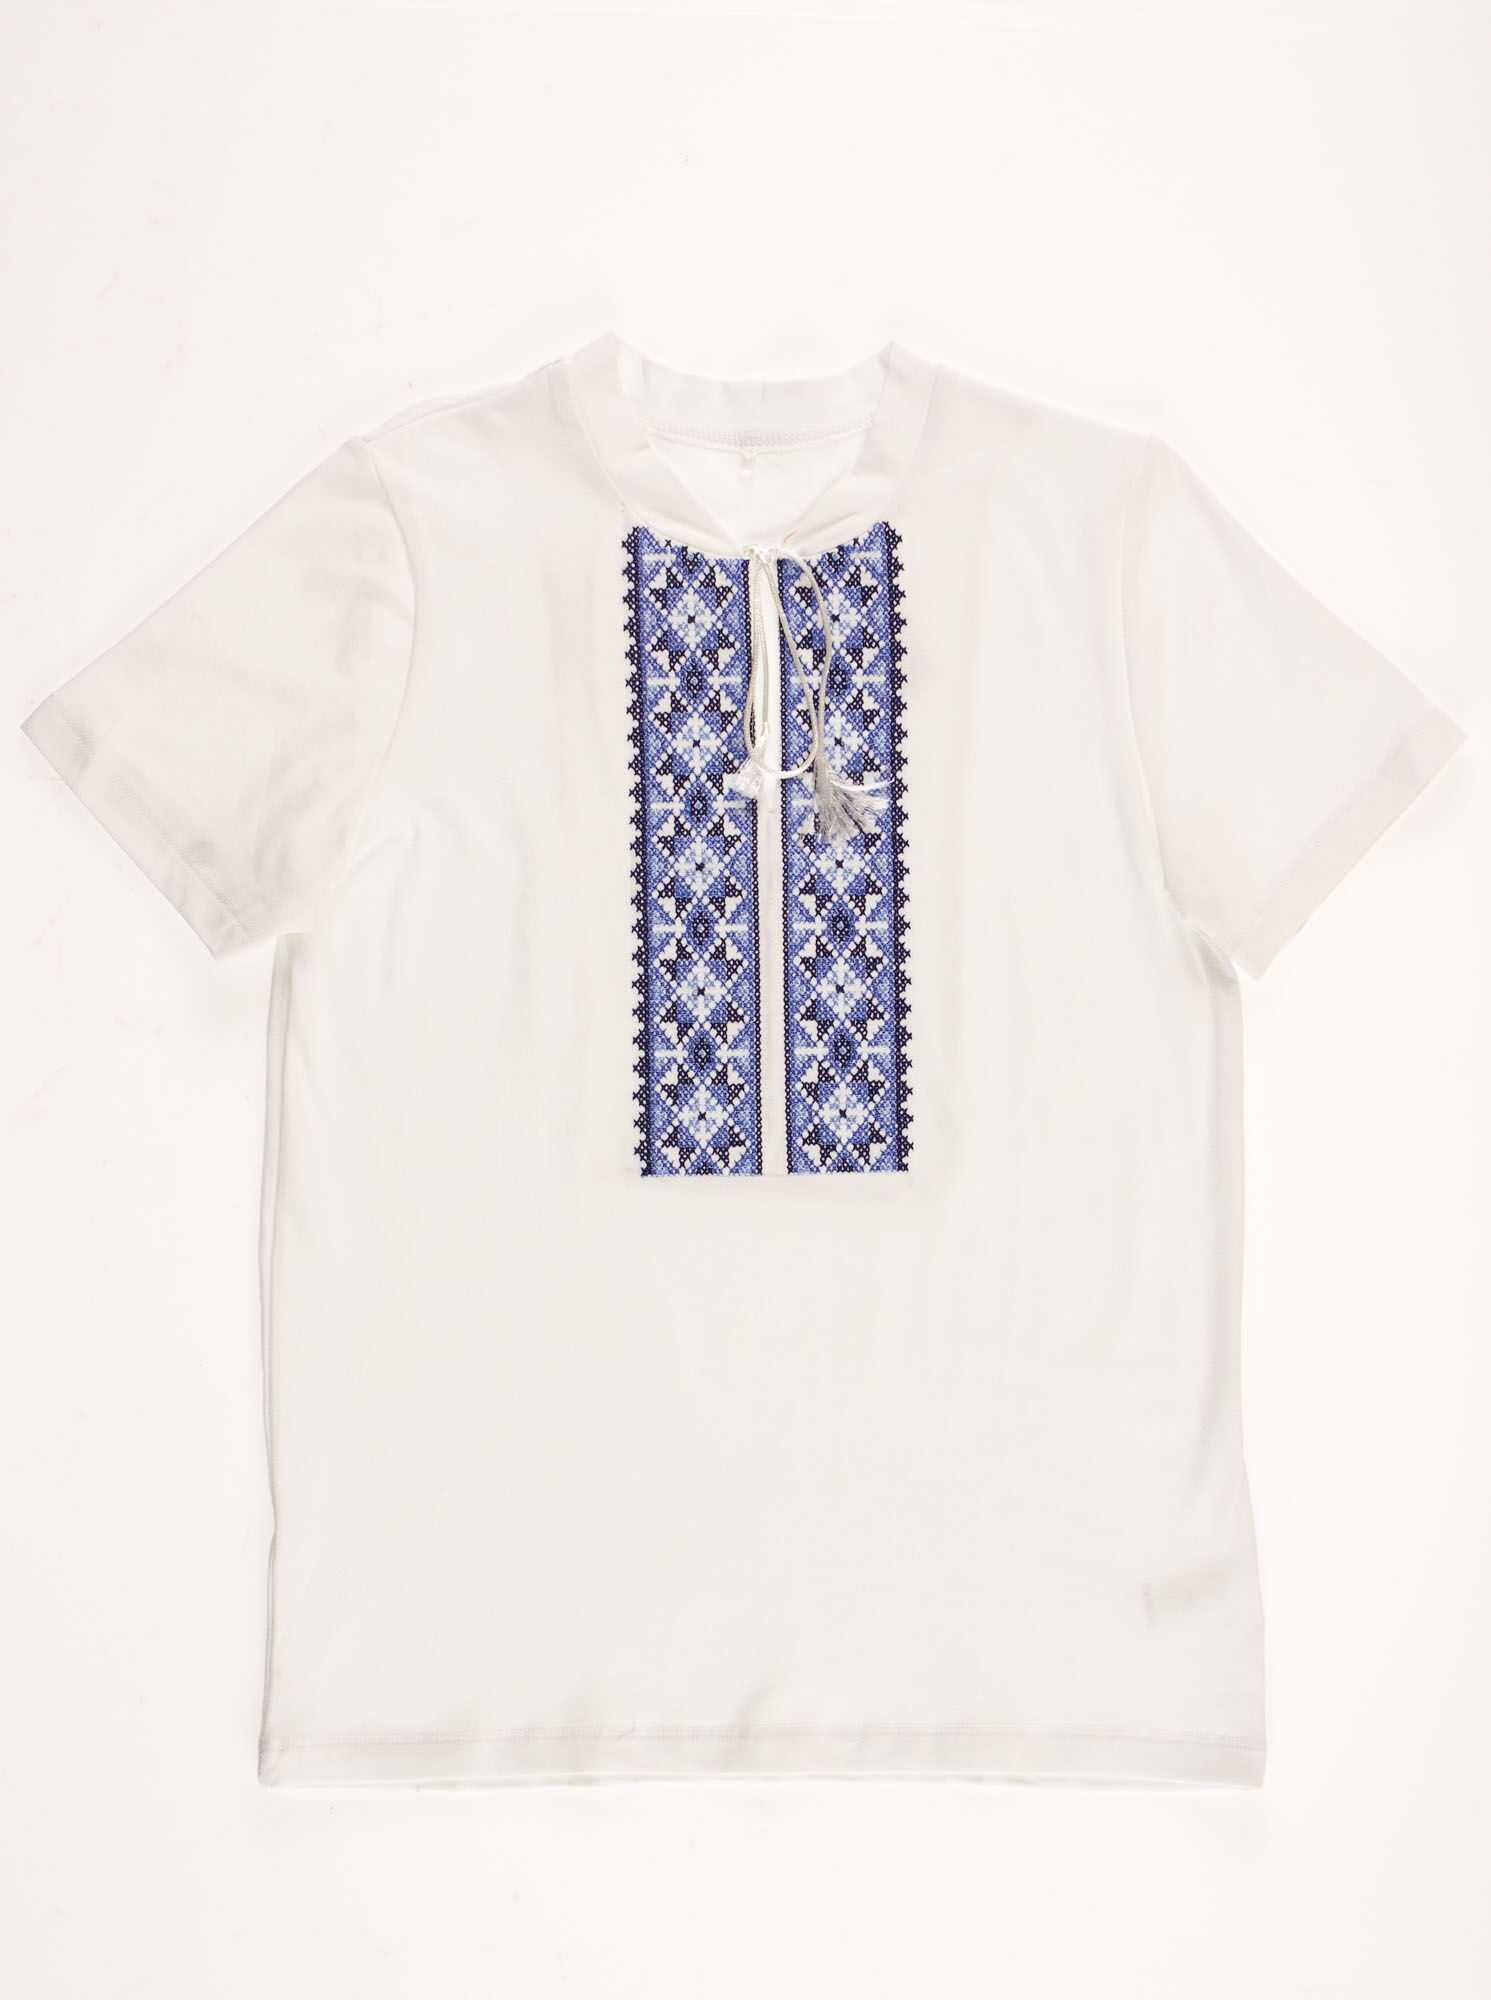 Вышиванка-футболка для мальчика Фабрика голубая 6020В - цена